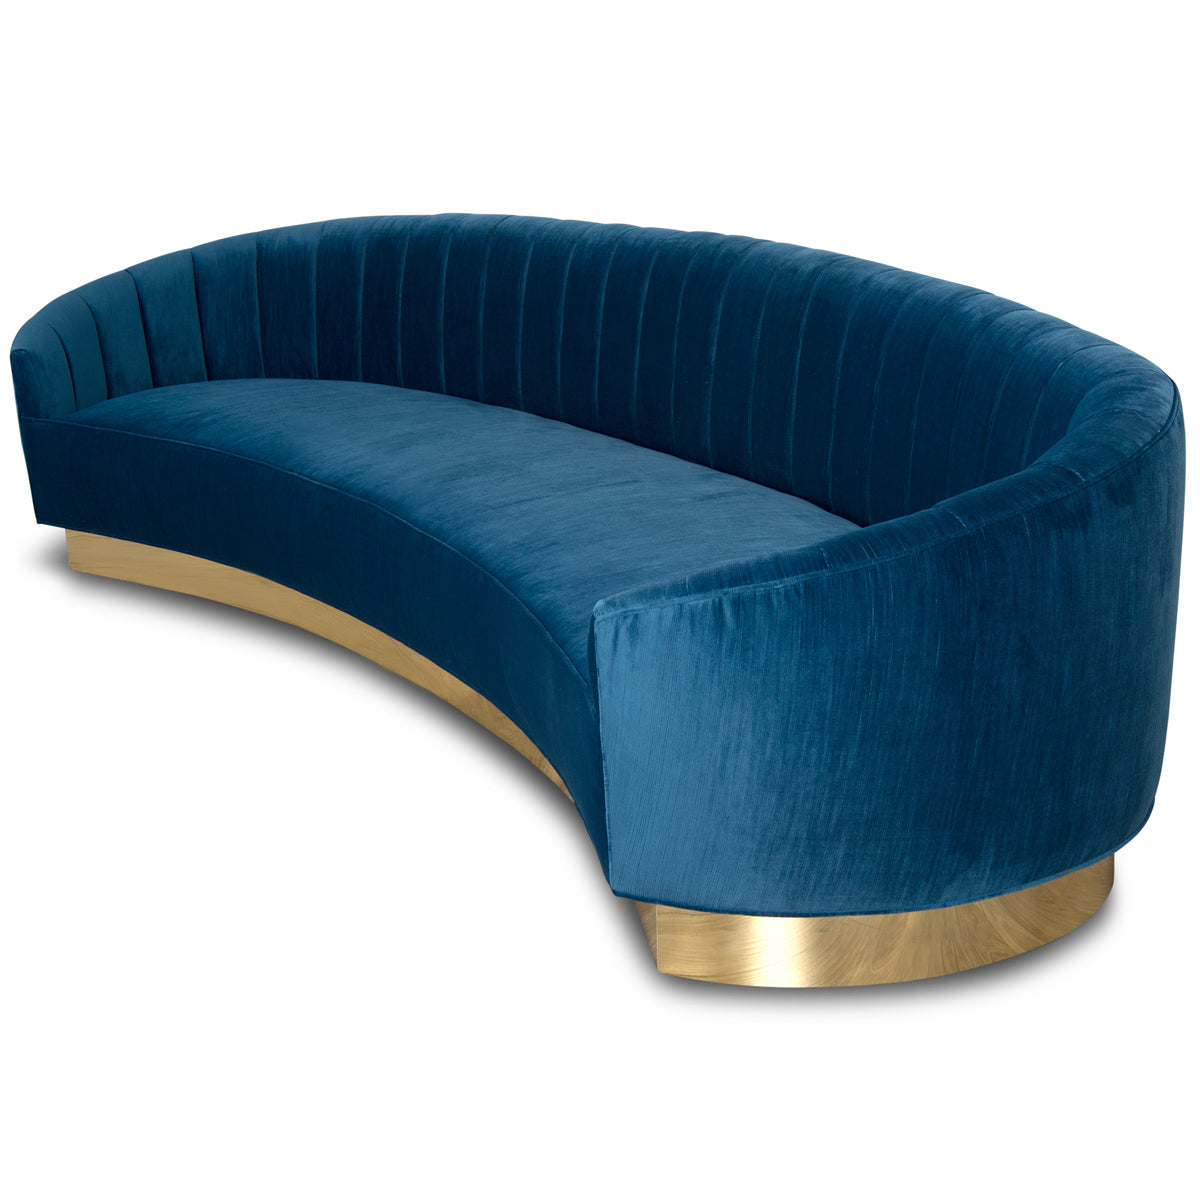 Art Deco 2 Sofa - Crescent Deco Sofa with Curved Arms - ModShop